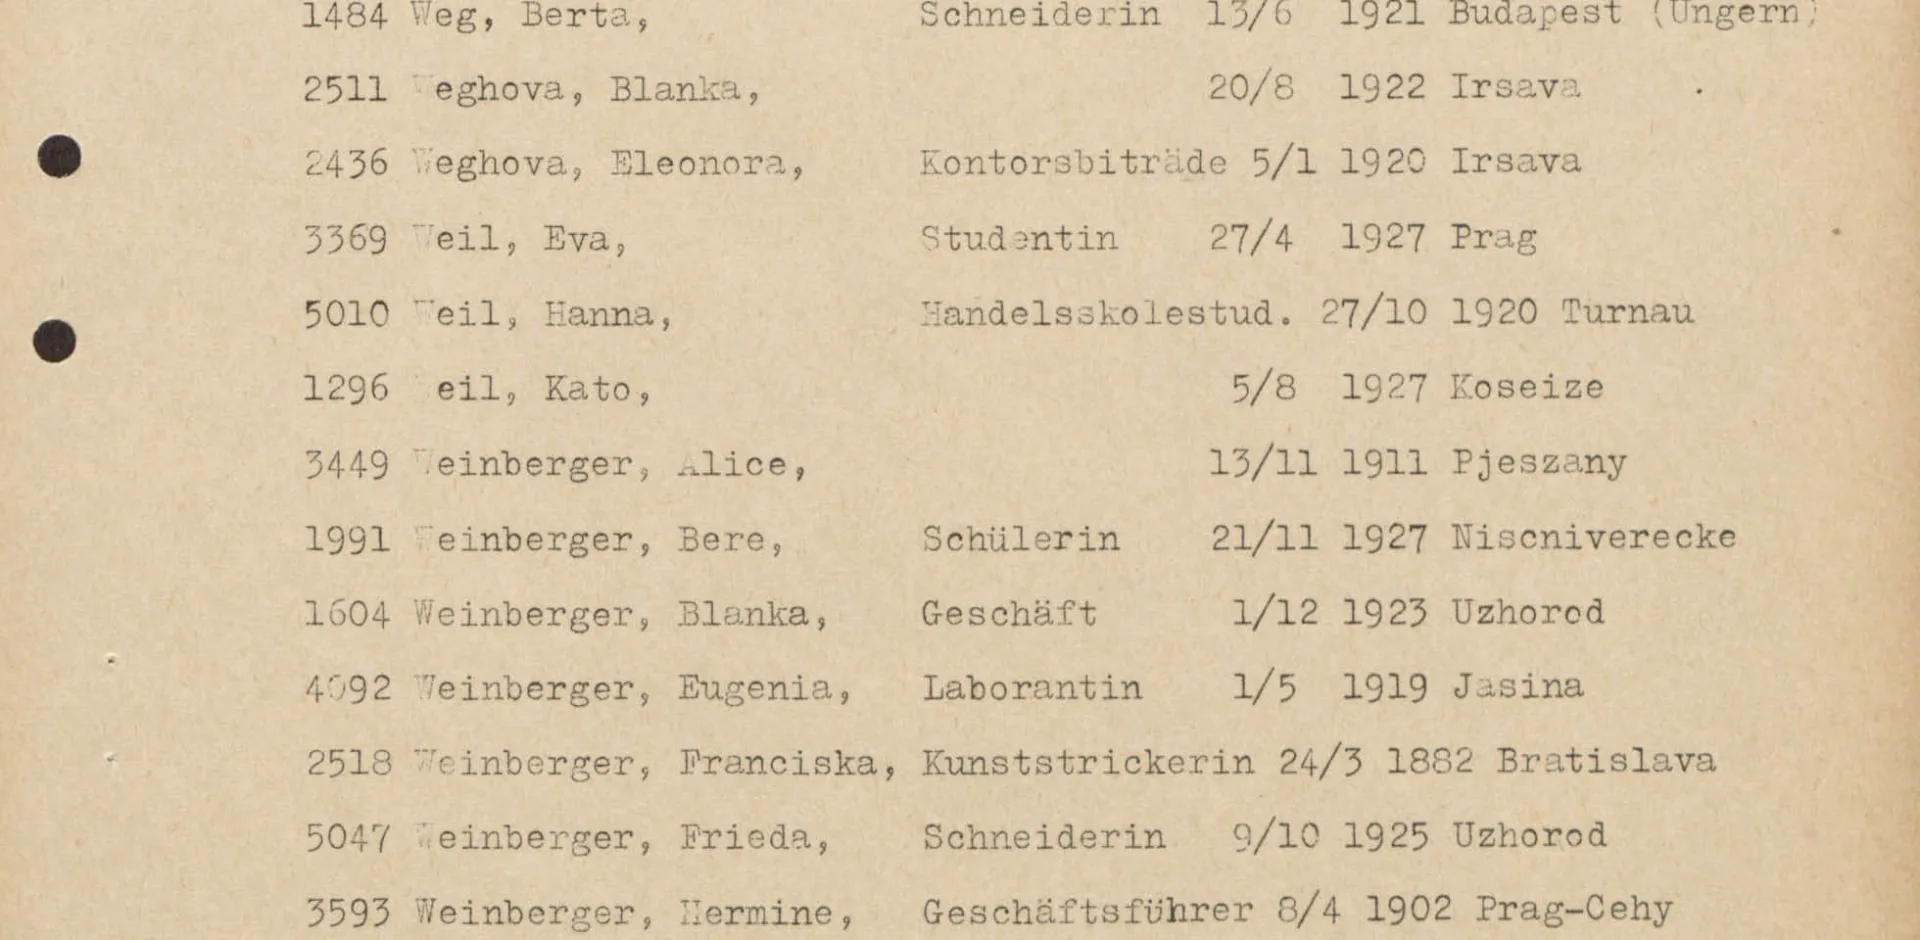 Lista från UNRRA över personer som ska åka till Sverige där Eugenies namn är med.